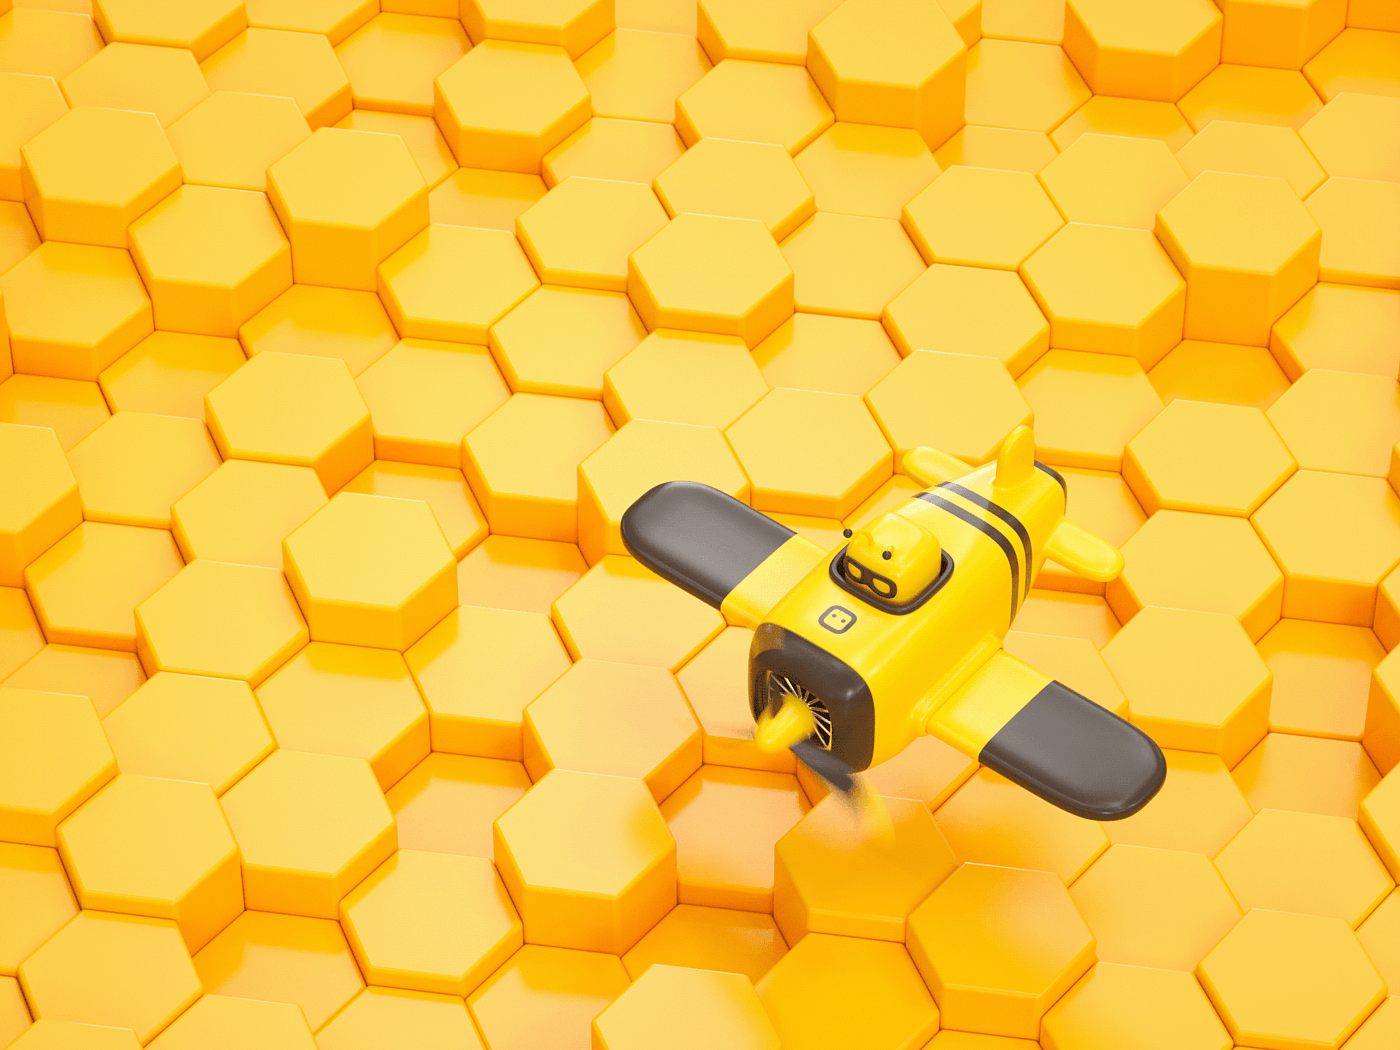 KIMPARKS LAB，CUUB-A01 Series，玩具，蜜蜂，